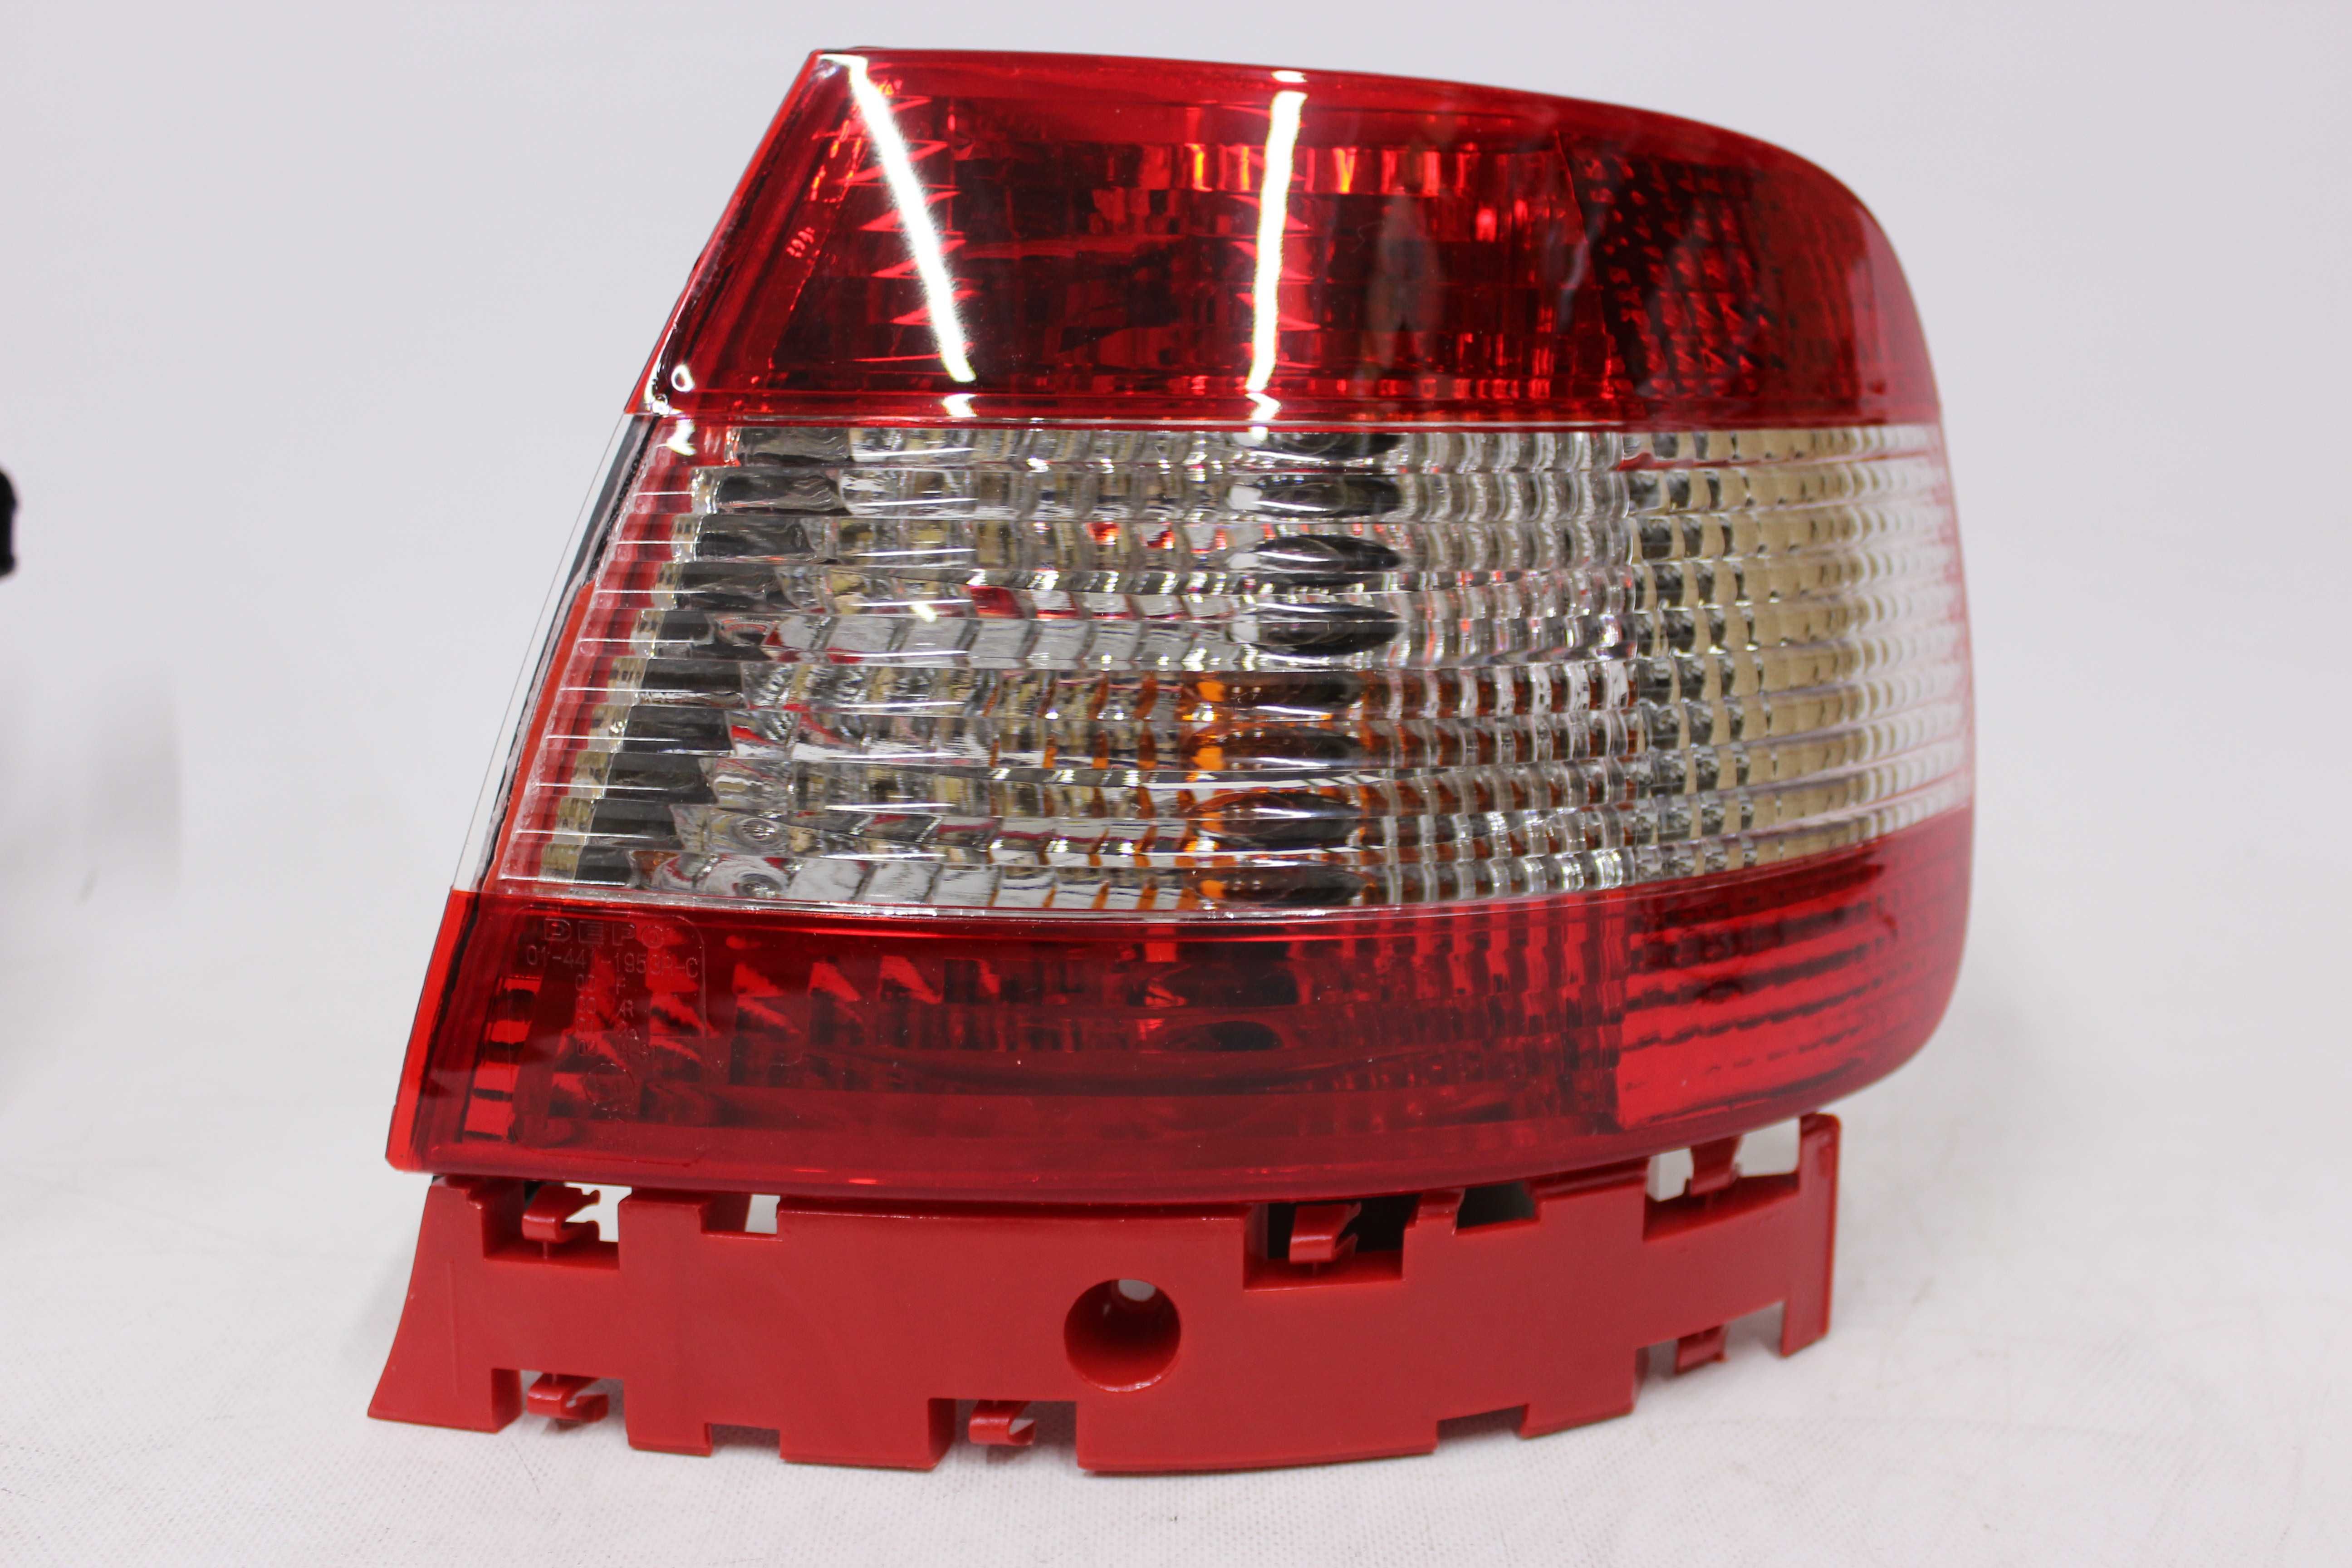 Lampy światła tył tylne AUDI A4 B5 94-00 SEDAN TUNING CZERWONE RED!